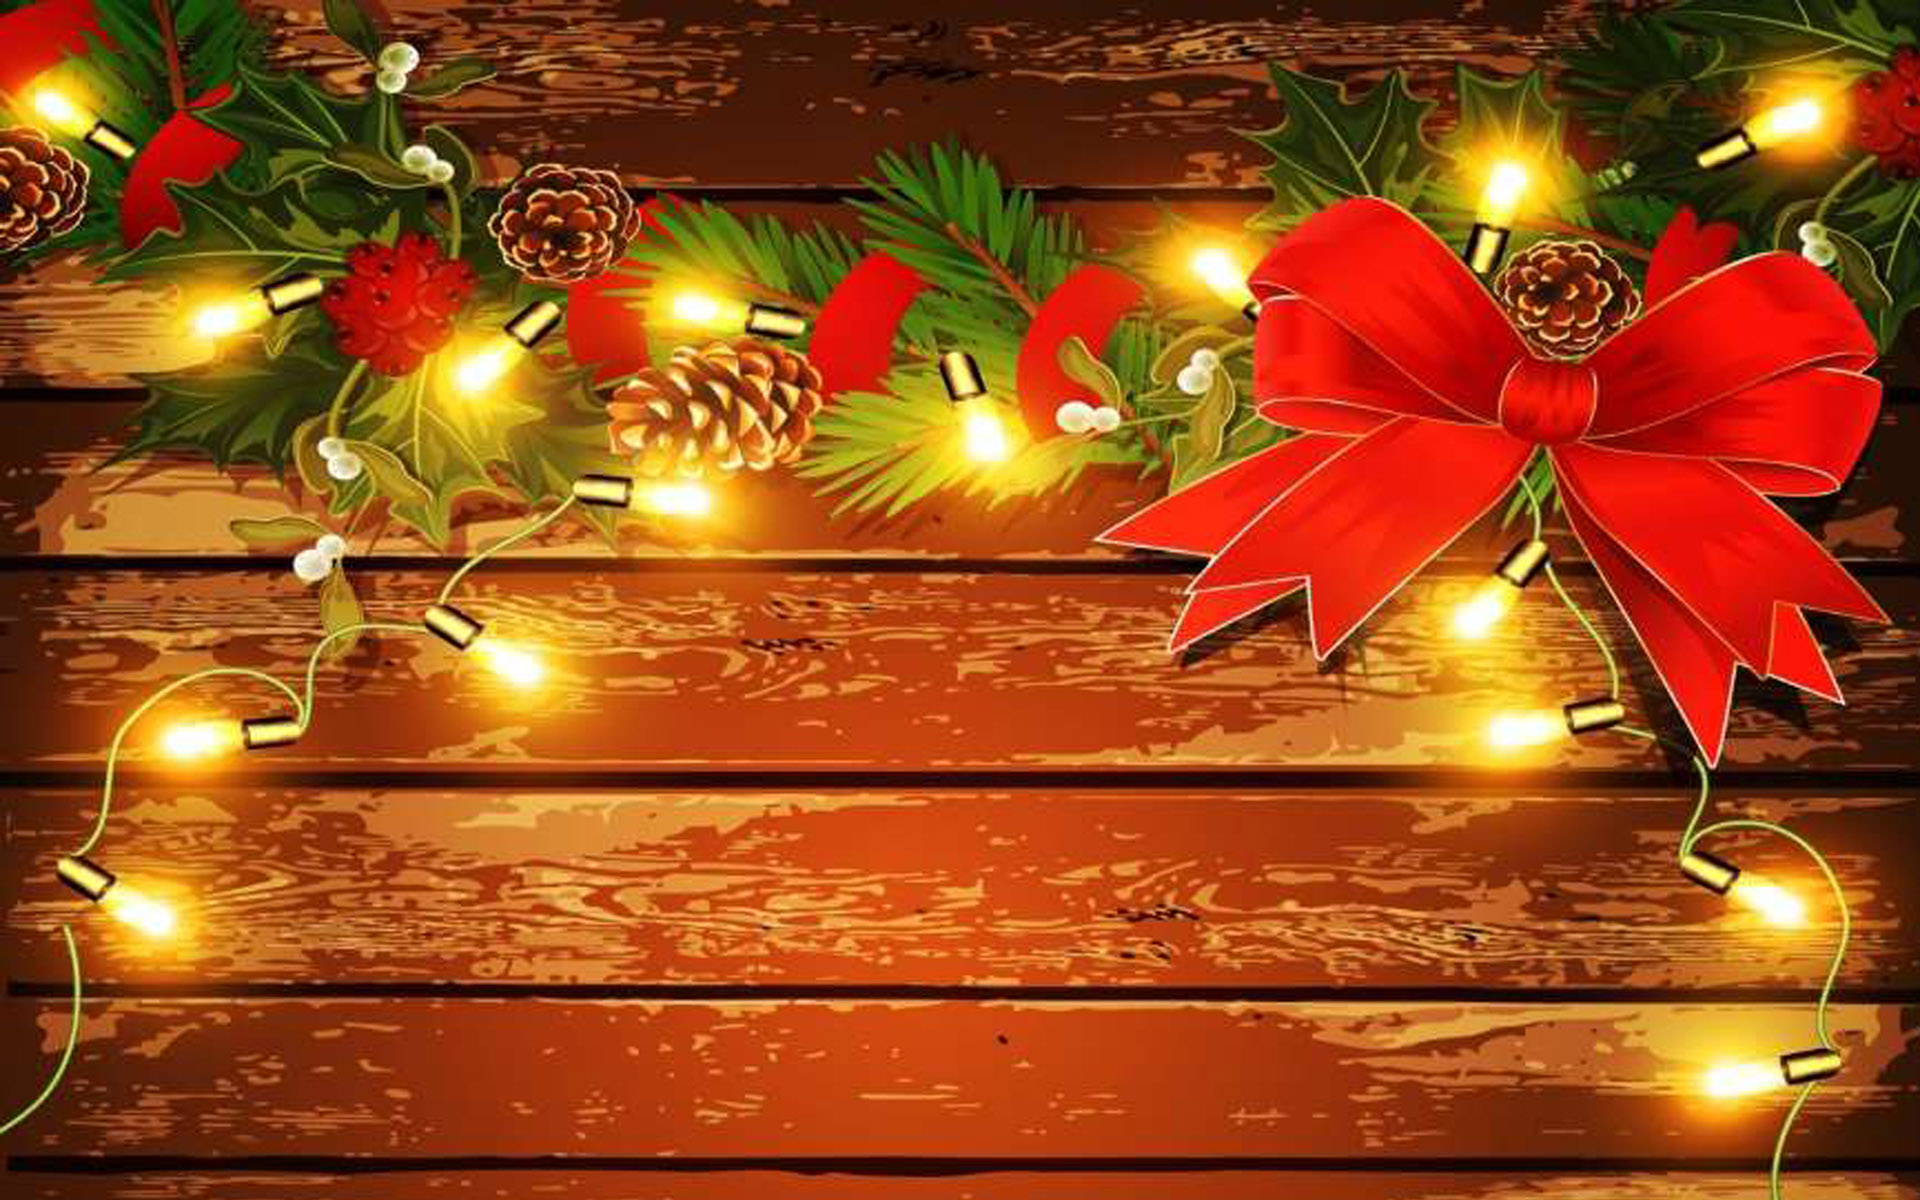 papel pintado navidad,decoración navideña,árbol,nochebuena,encendiendo,navidad